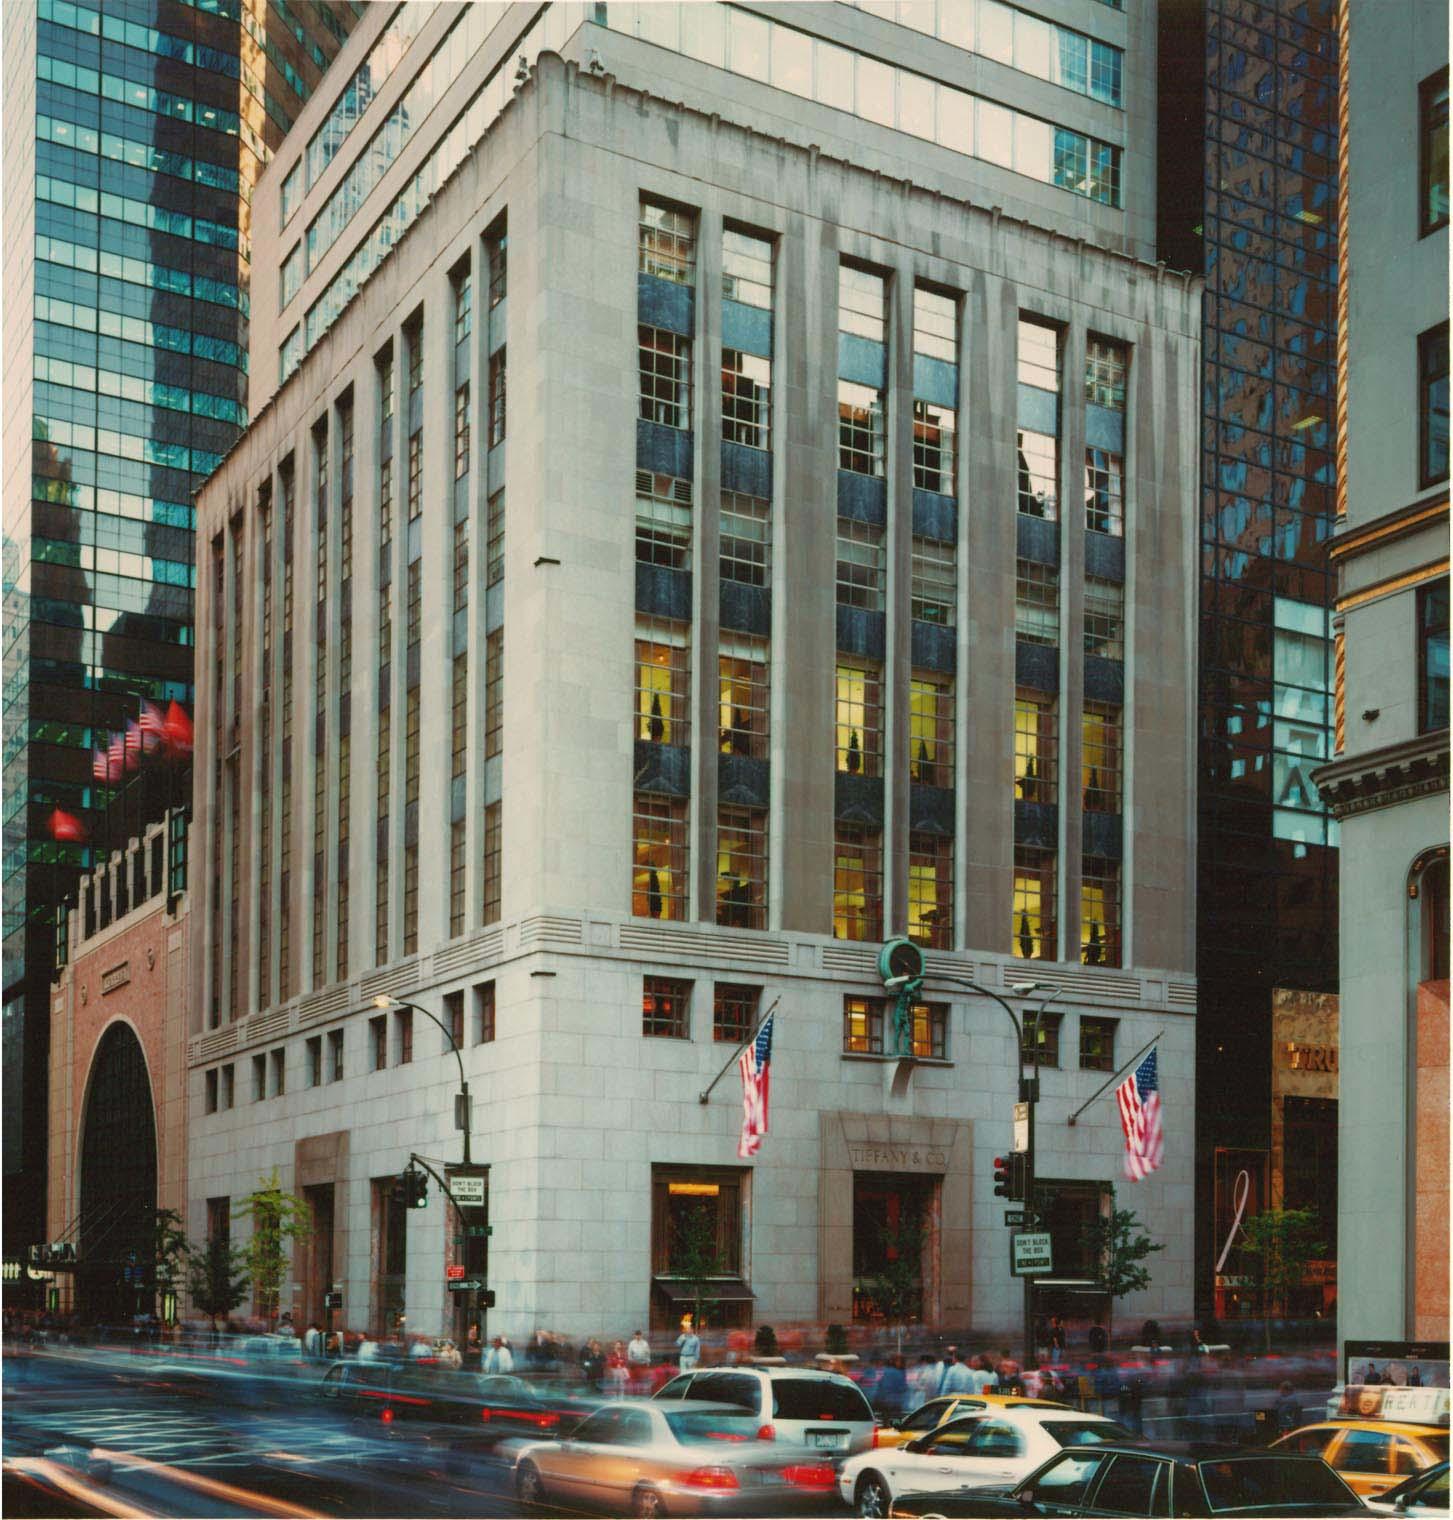 Tiffany & Co. in New York, NY - (212) 755-8